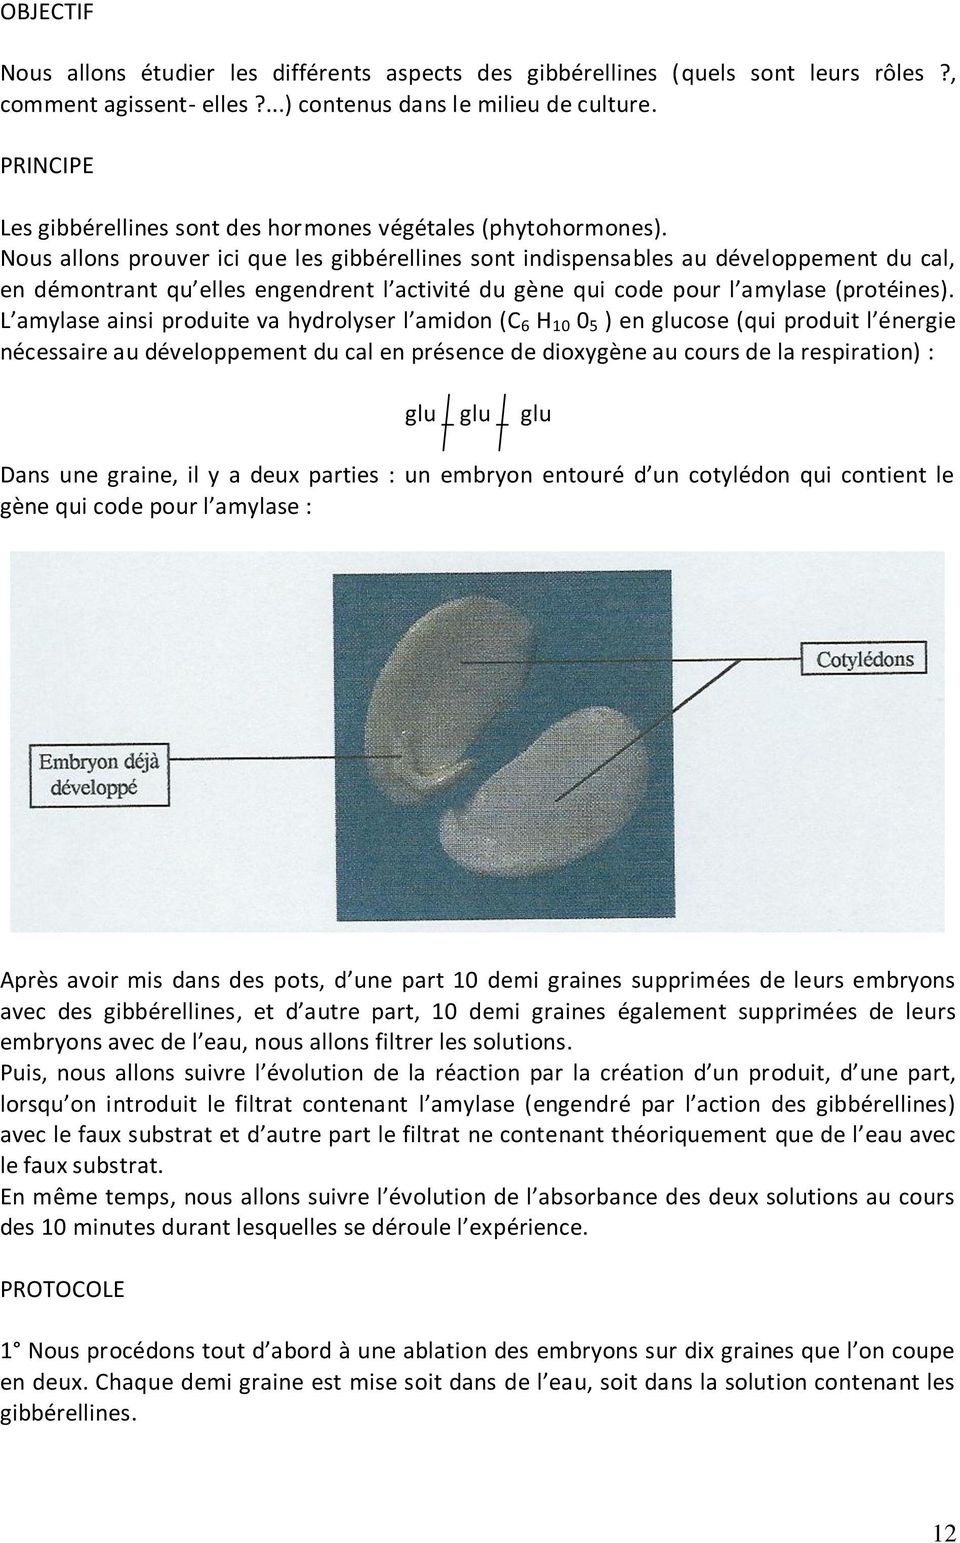 mathematical analysis malik arora pdf merge